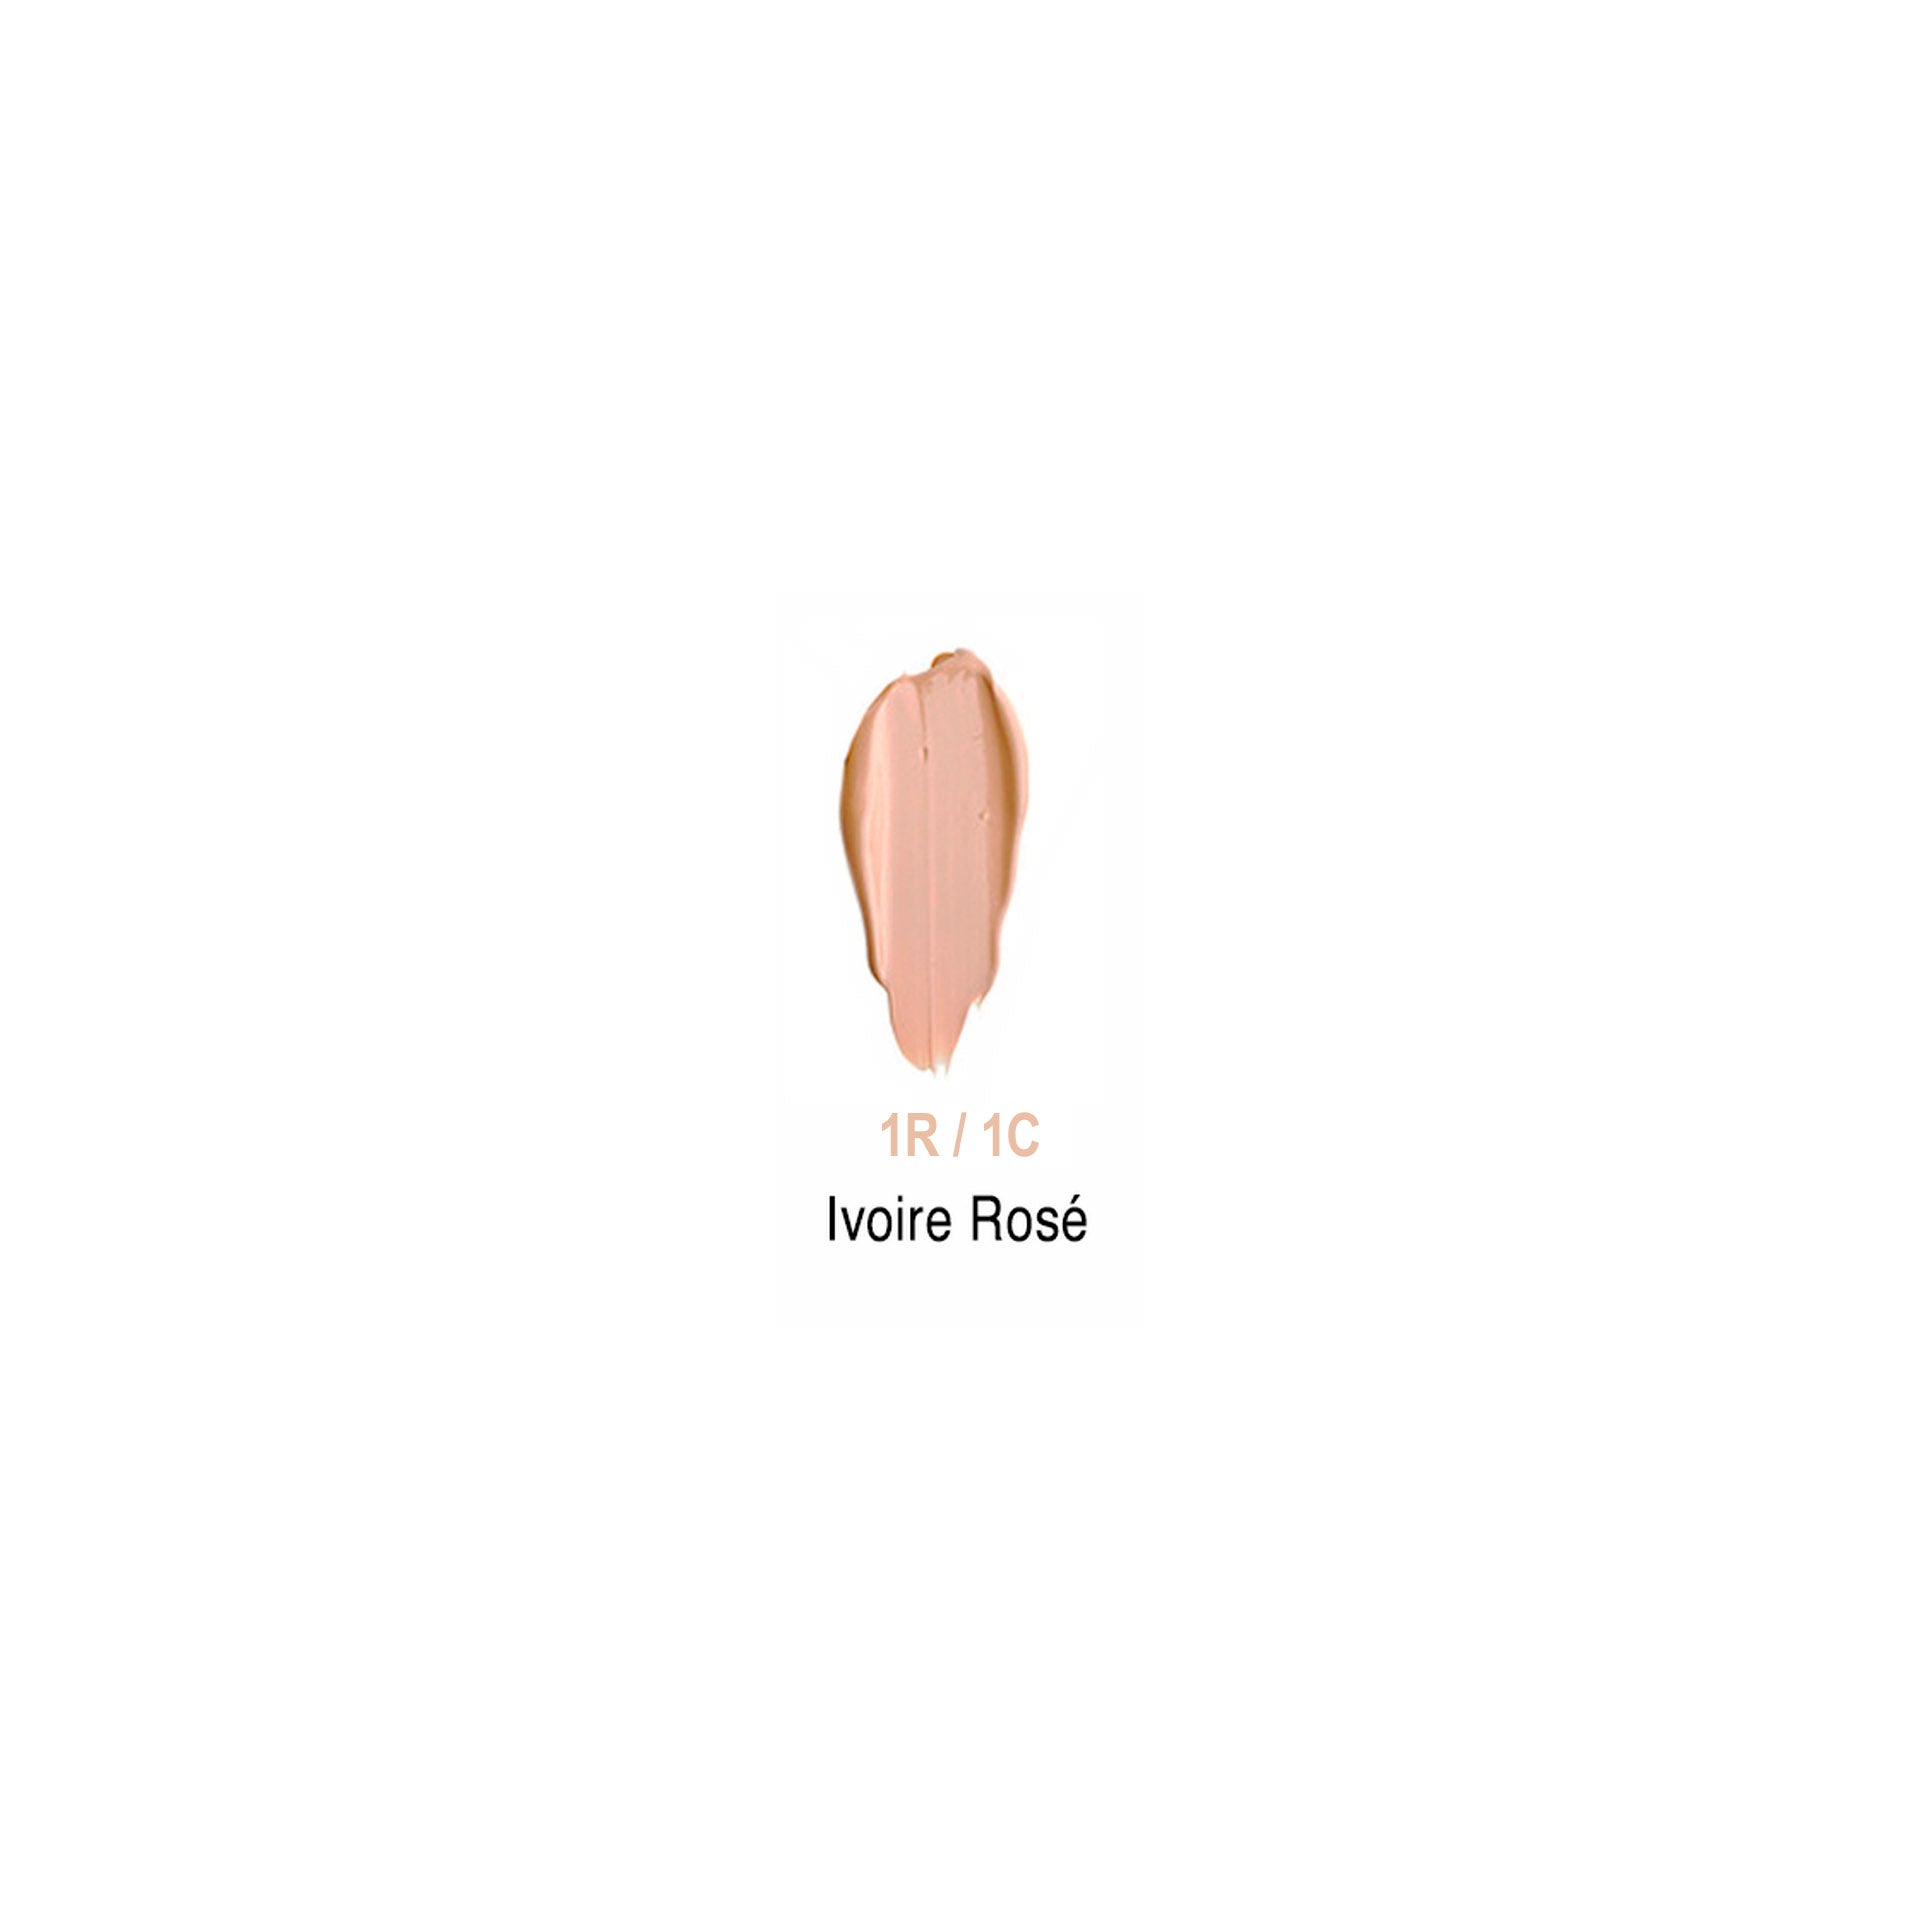 L’Oréal Base Accord Parfait Nº 1.R/1.C Rose Ivory